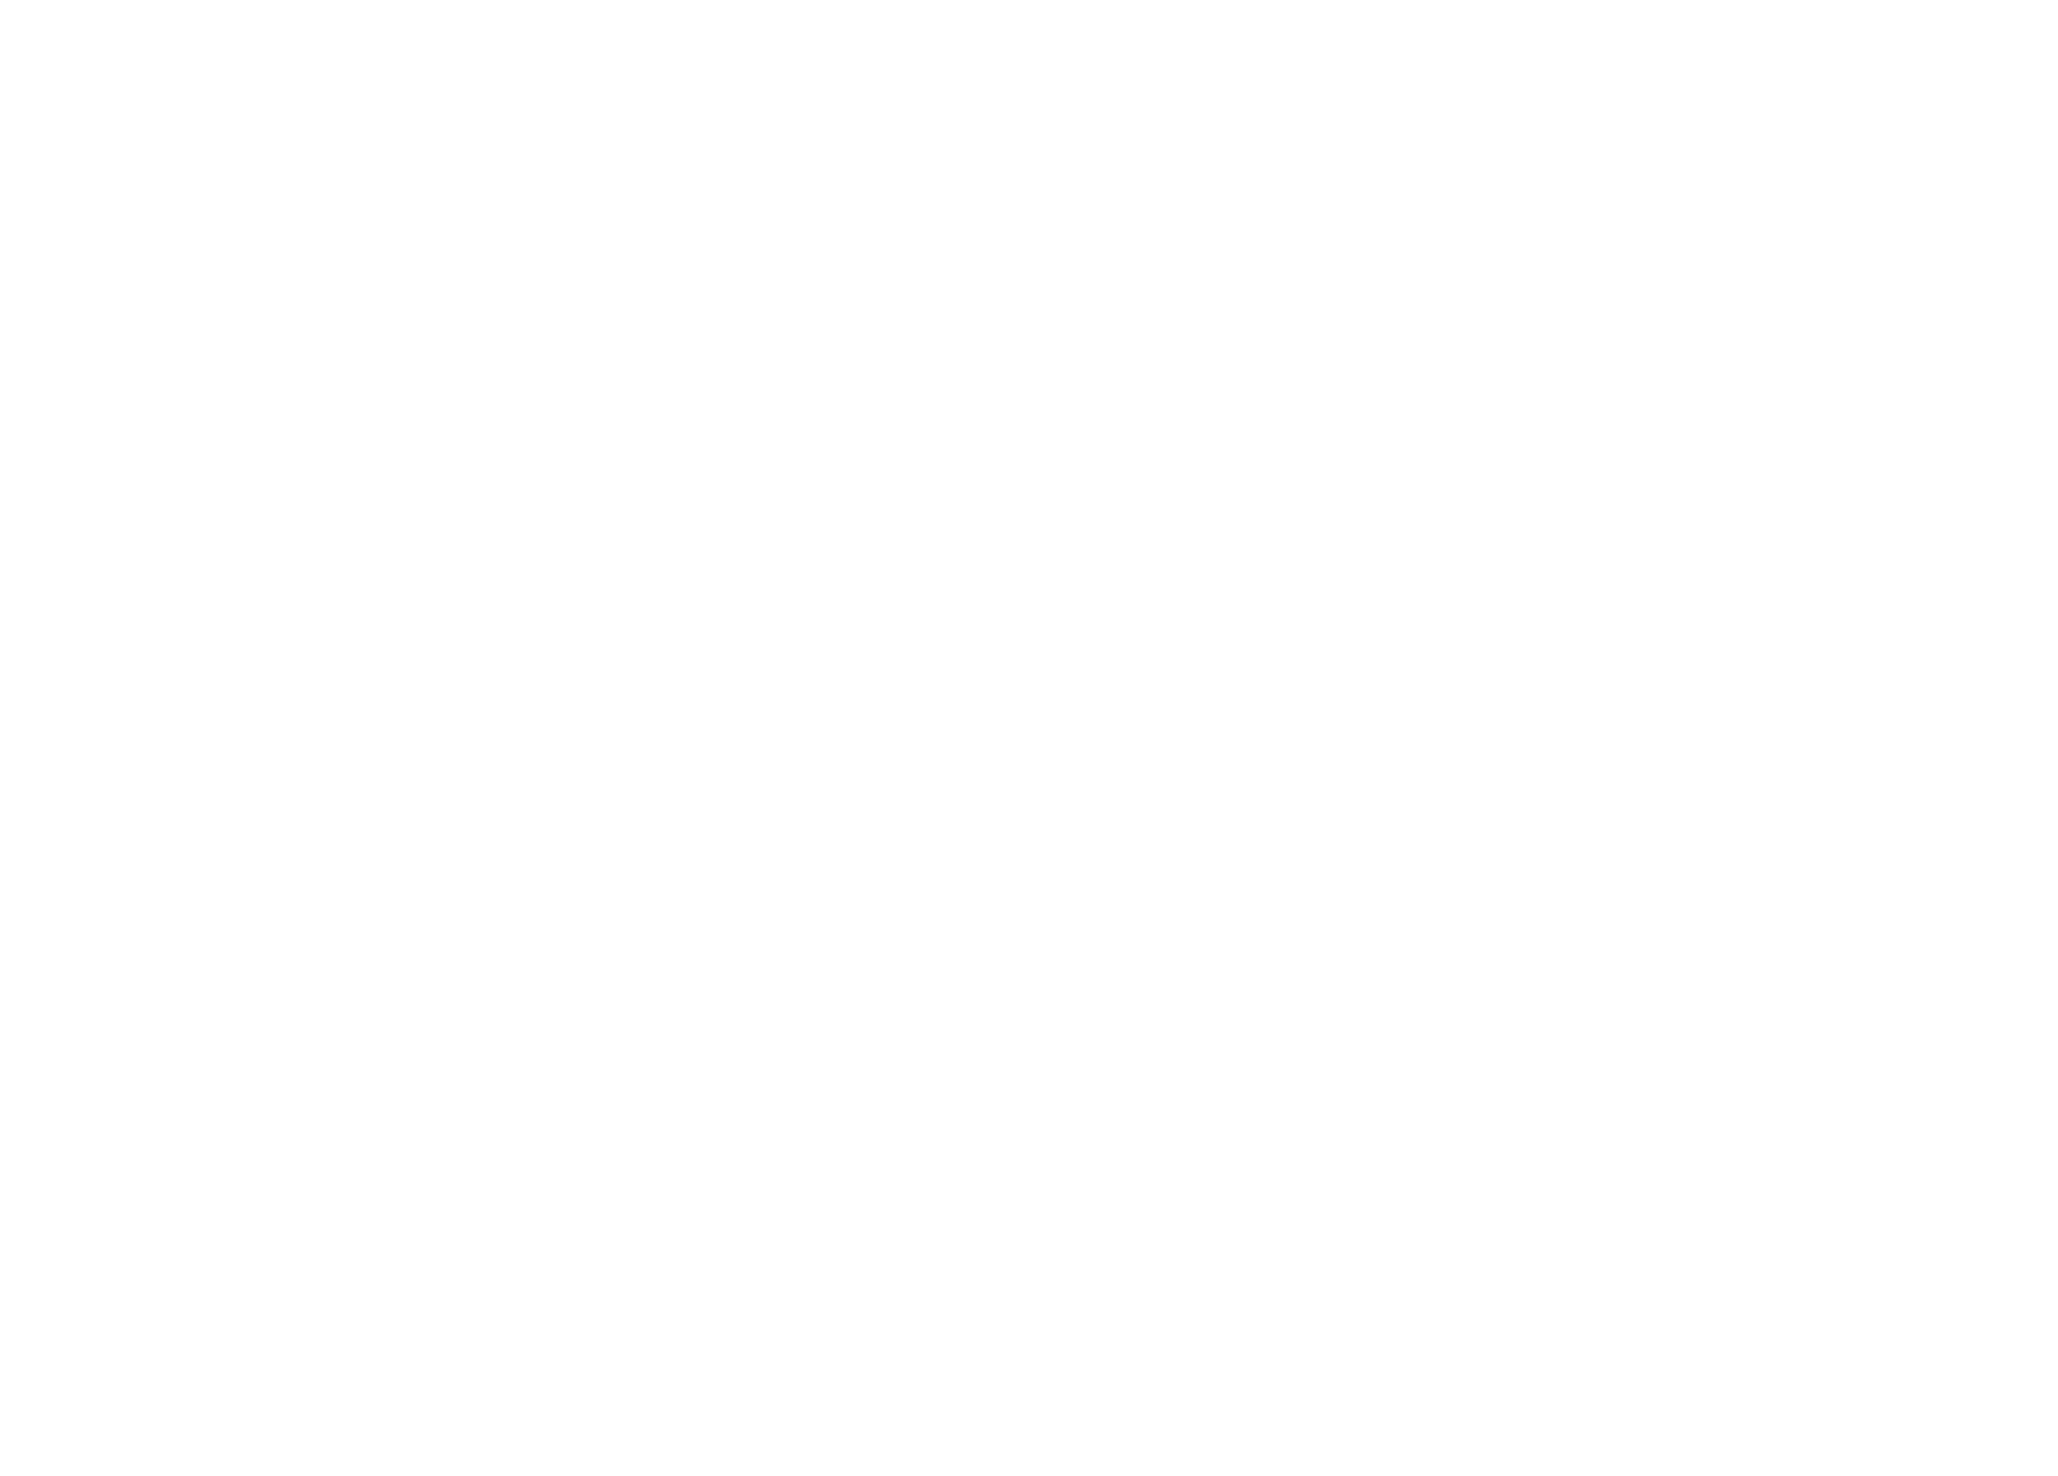 ARTSTEC STUDIO